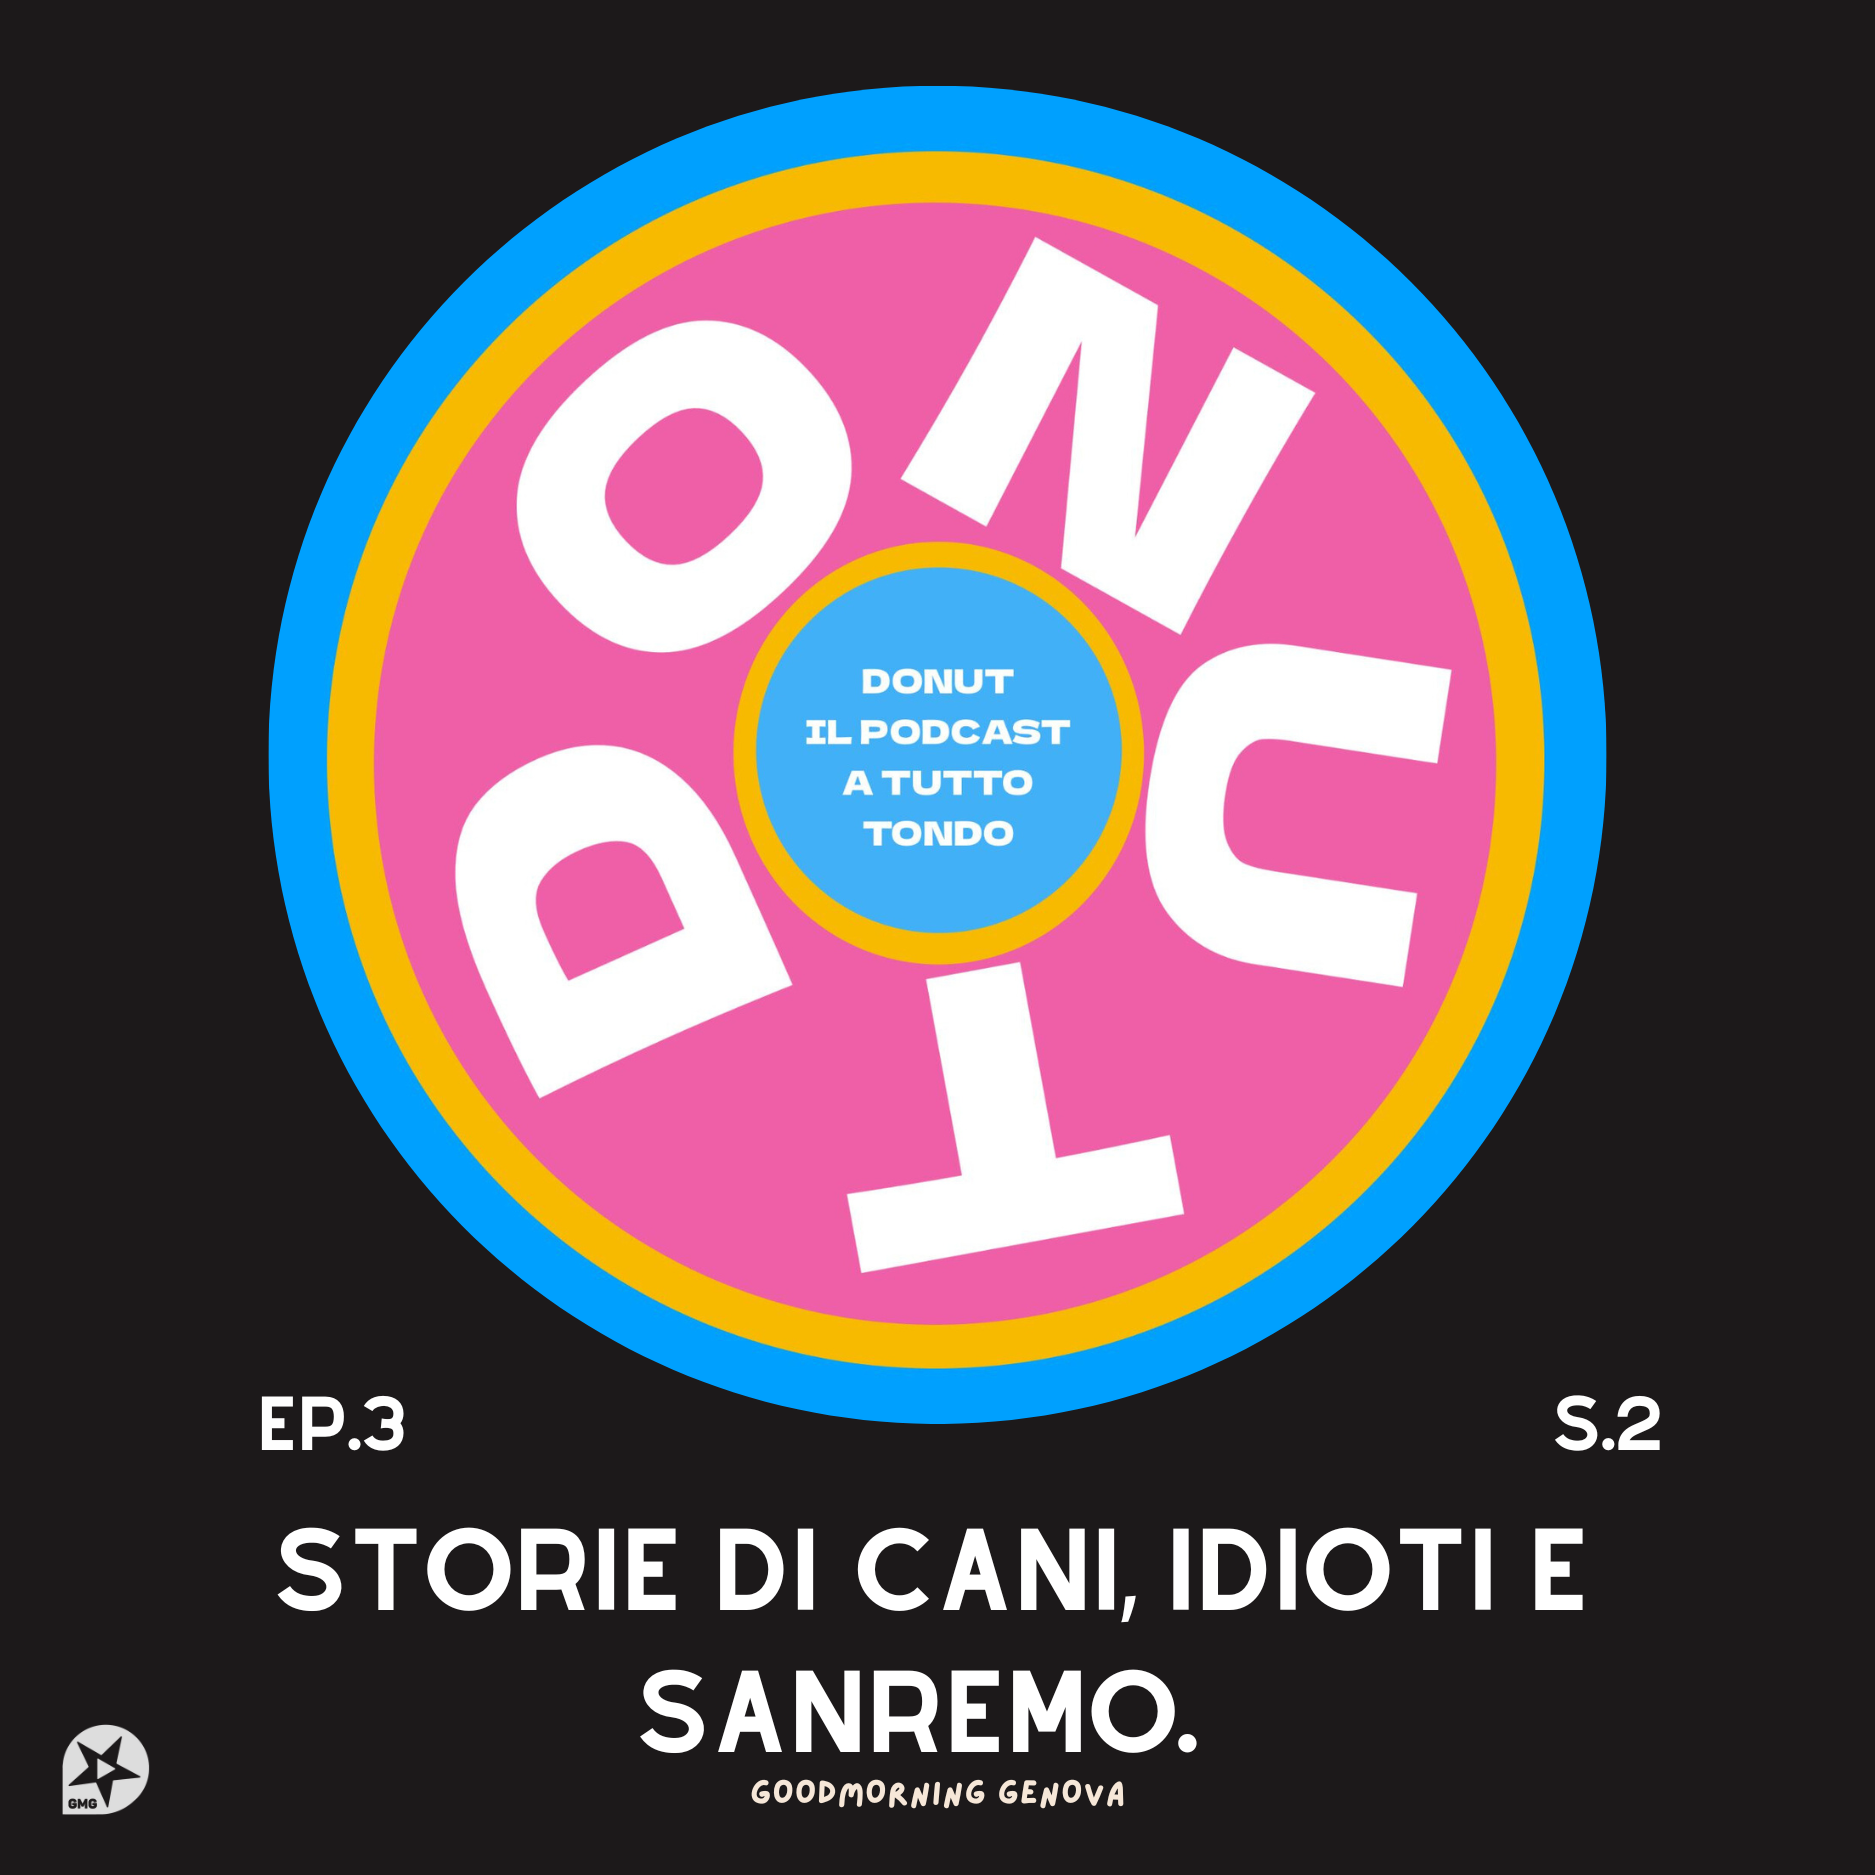 Donut S2 episodio 3 - Storie di cani, idioti e Sanremo.